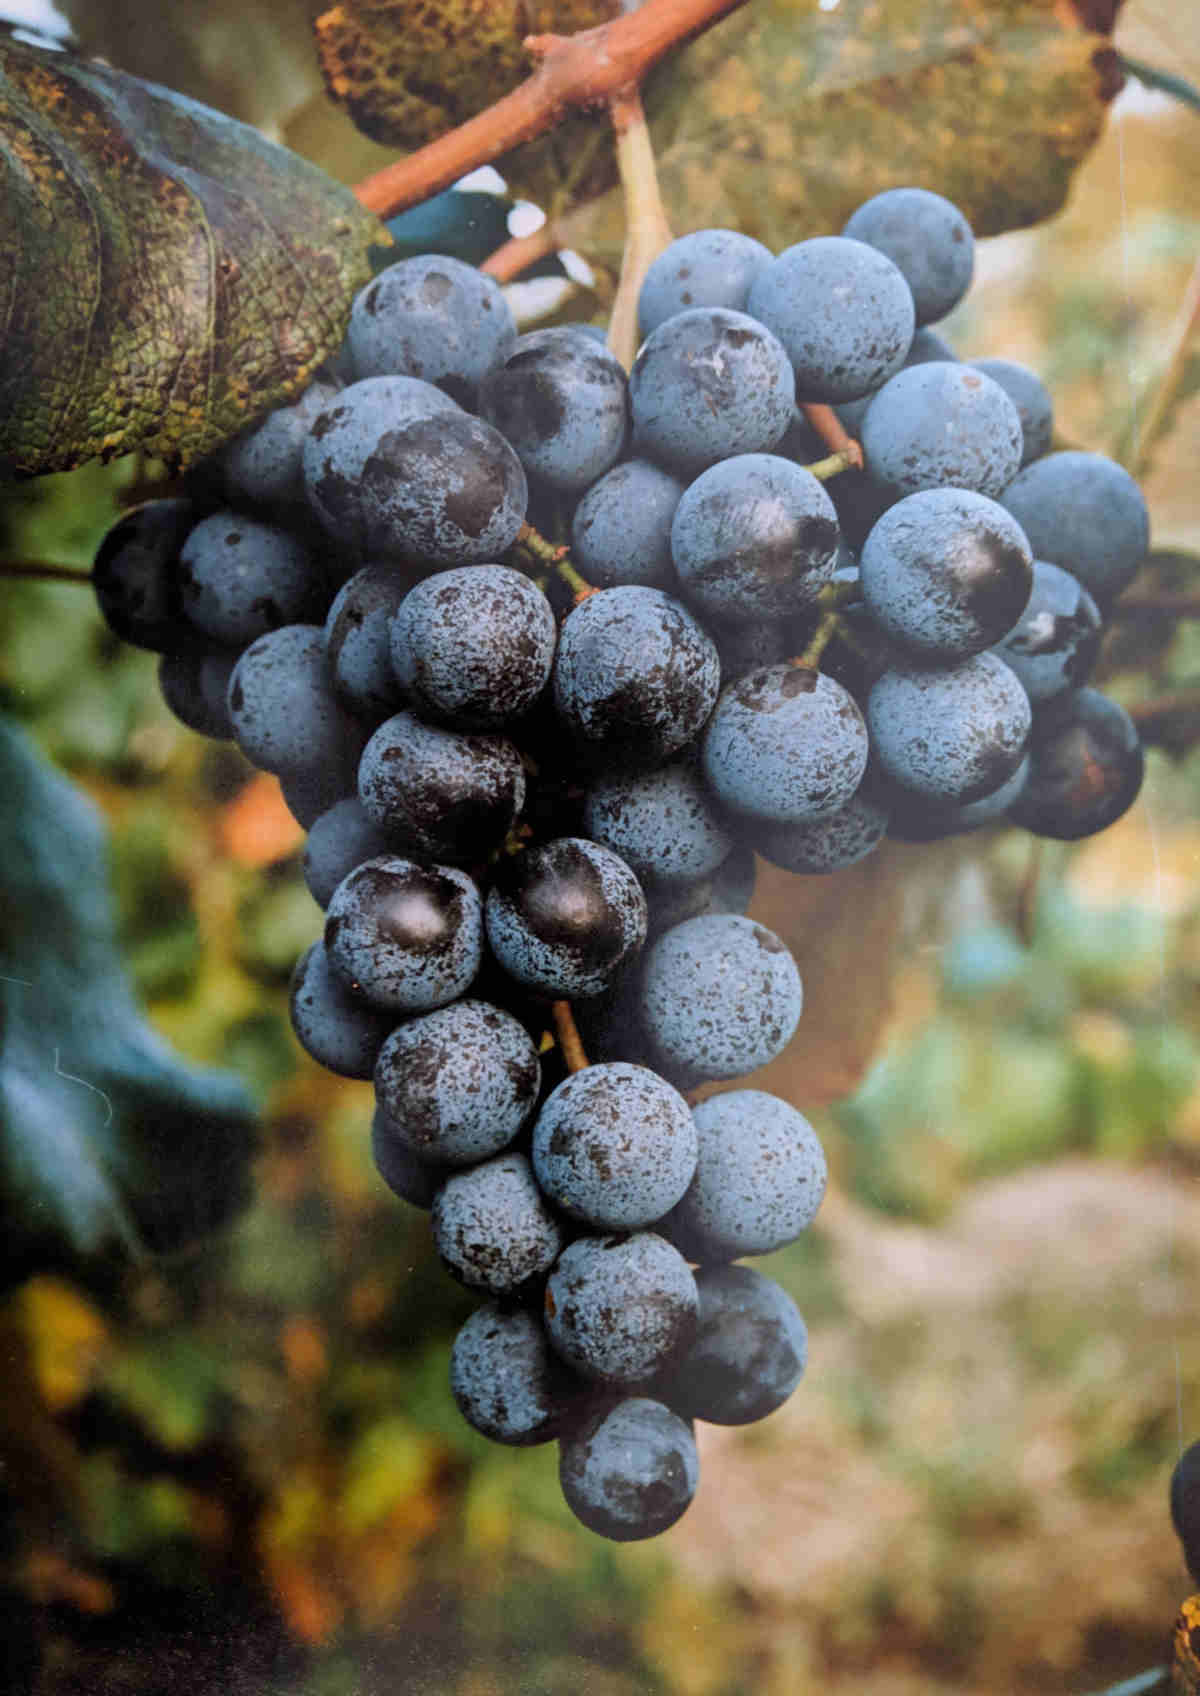 A Concord grape bunch